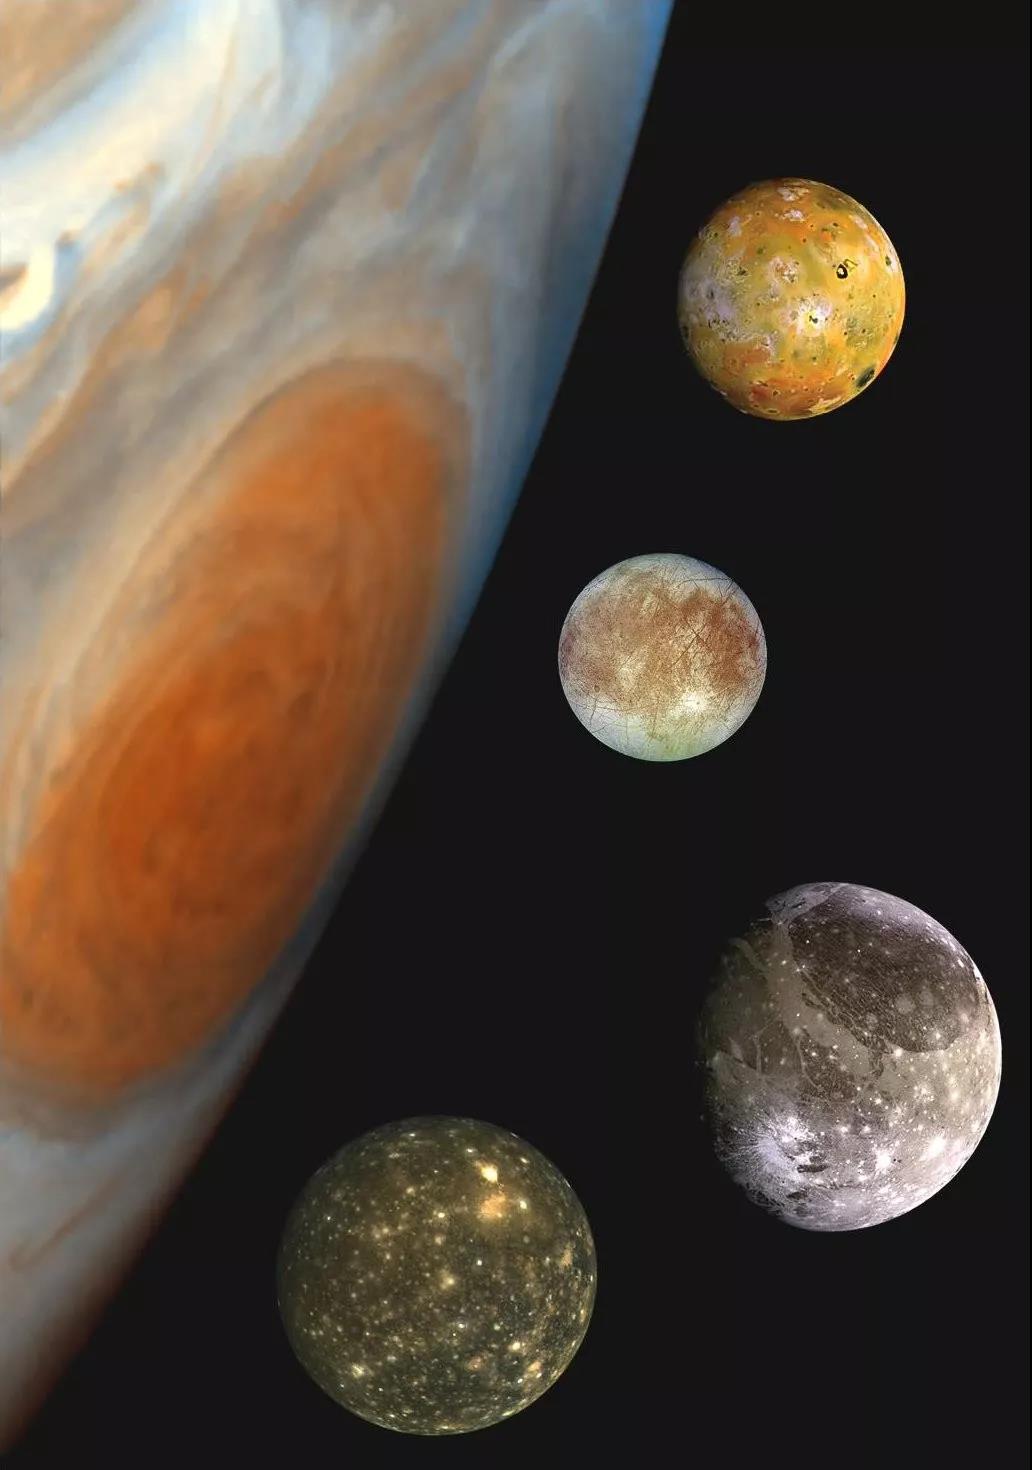 伽利略之前，有人发现过木星卫星吗？